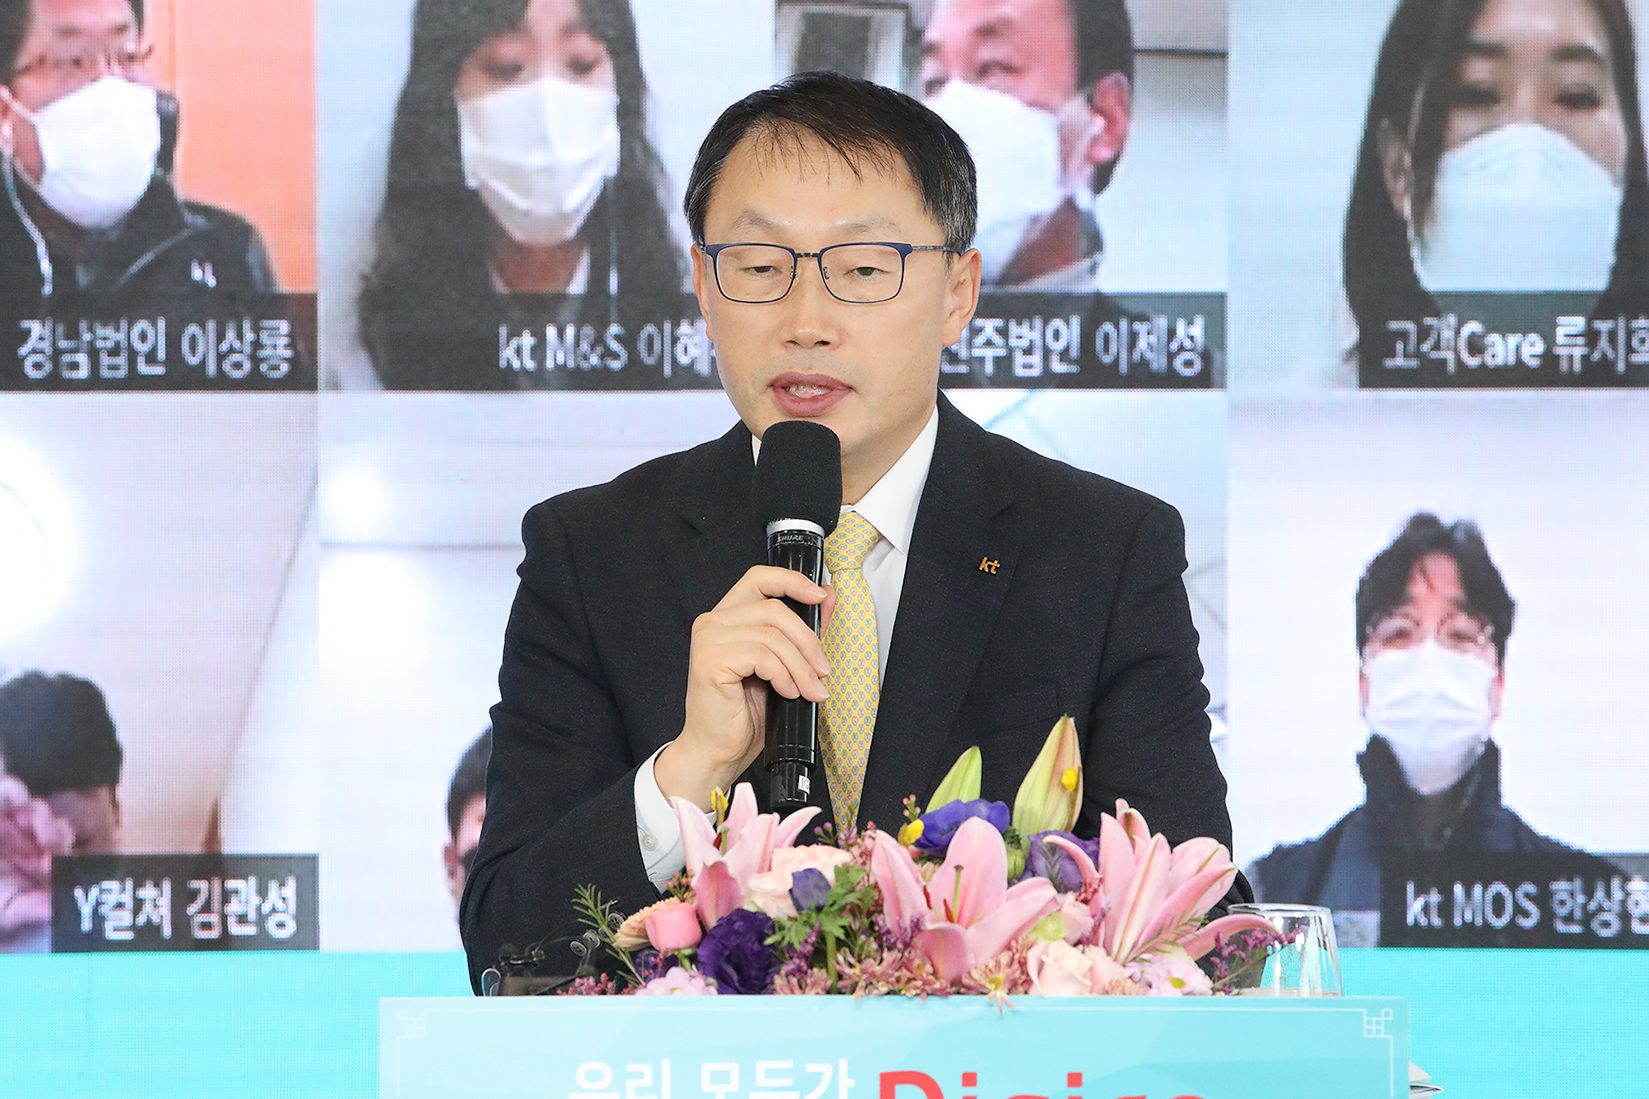 구현모, KT 신년사에서 “미디어콘텐츠 로봇 바이오헬스케어 도전”